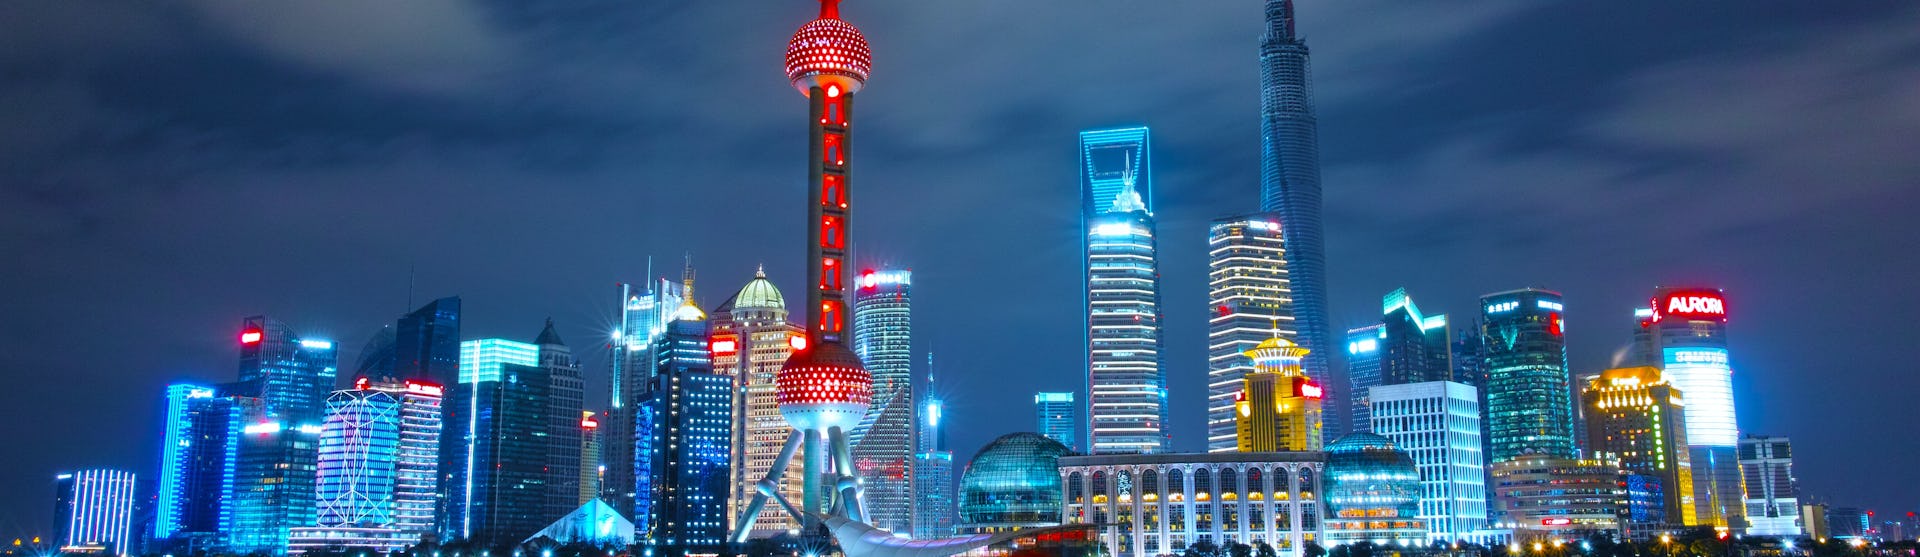 Bild tagen från vattnet på Shanghai's skyskrapor i kvällsljus. Byggnaderna lyser i olika färger.